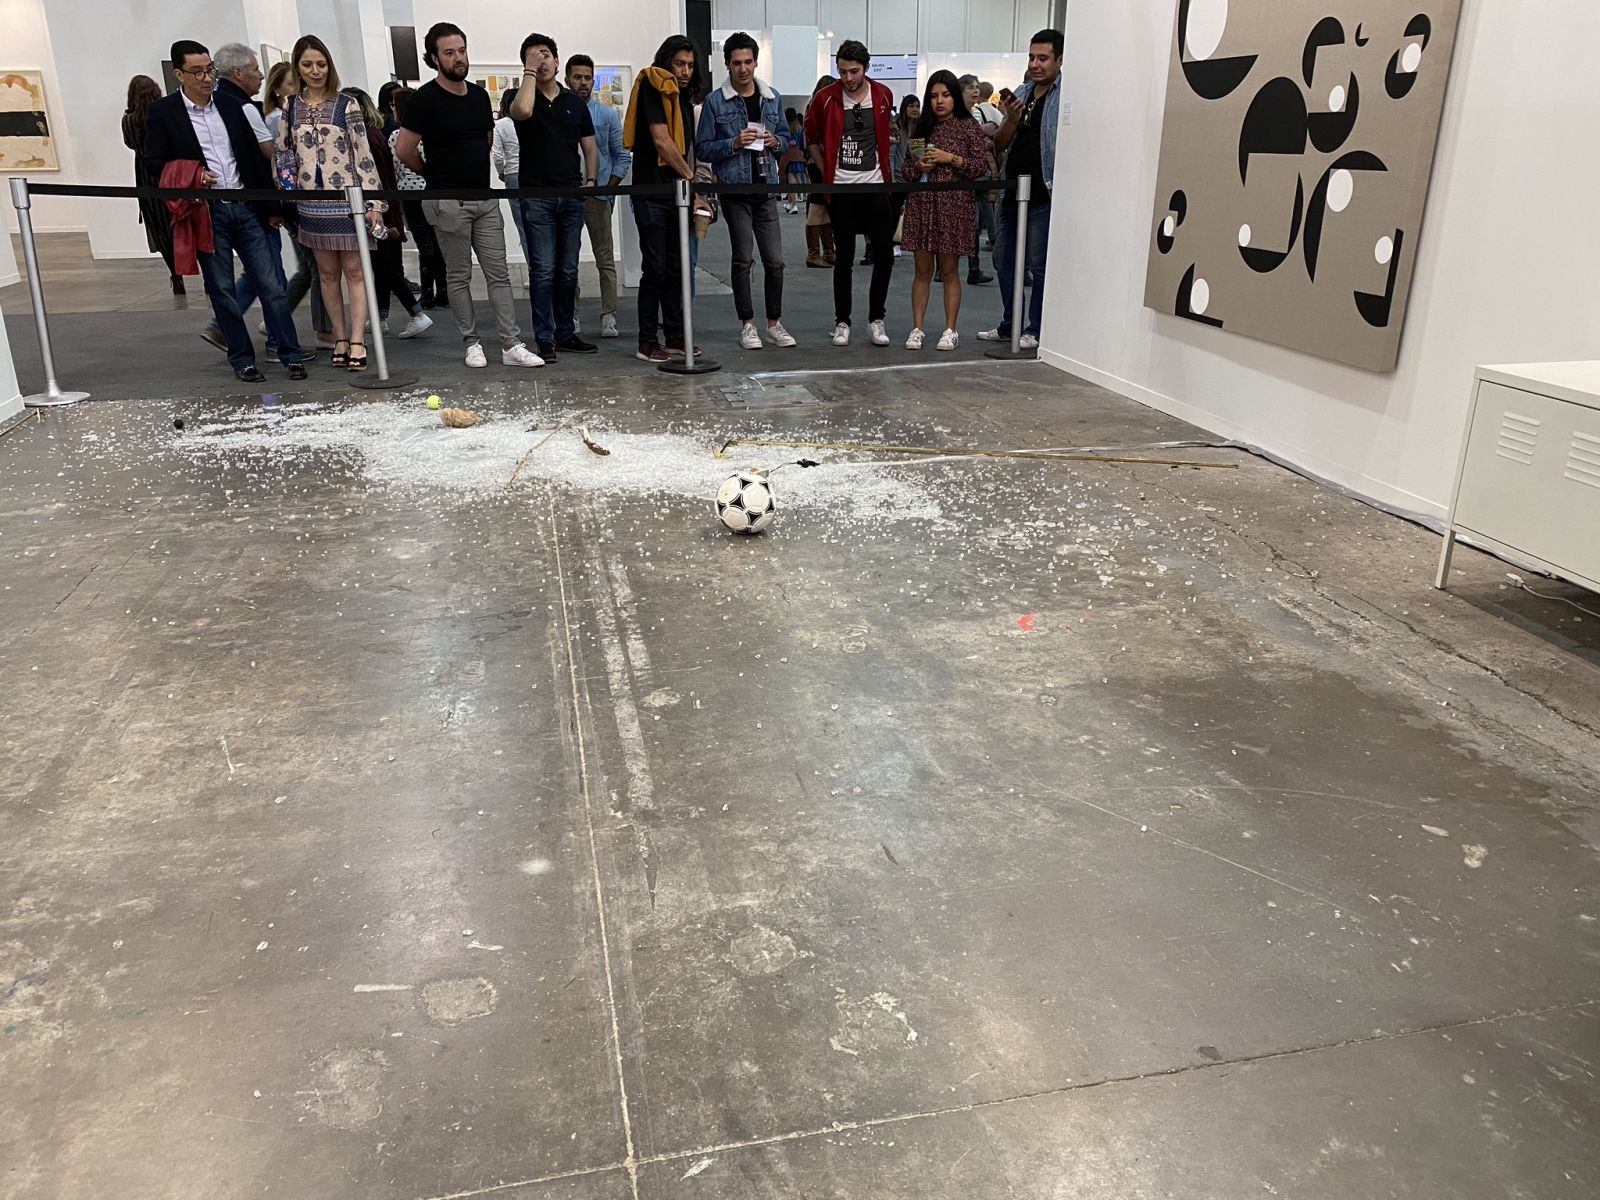 Курйози: критик розбила арт-об'єкт за 20 тис. дол. на виставці в Мексиці, фото — twitter.com/grazalce